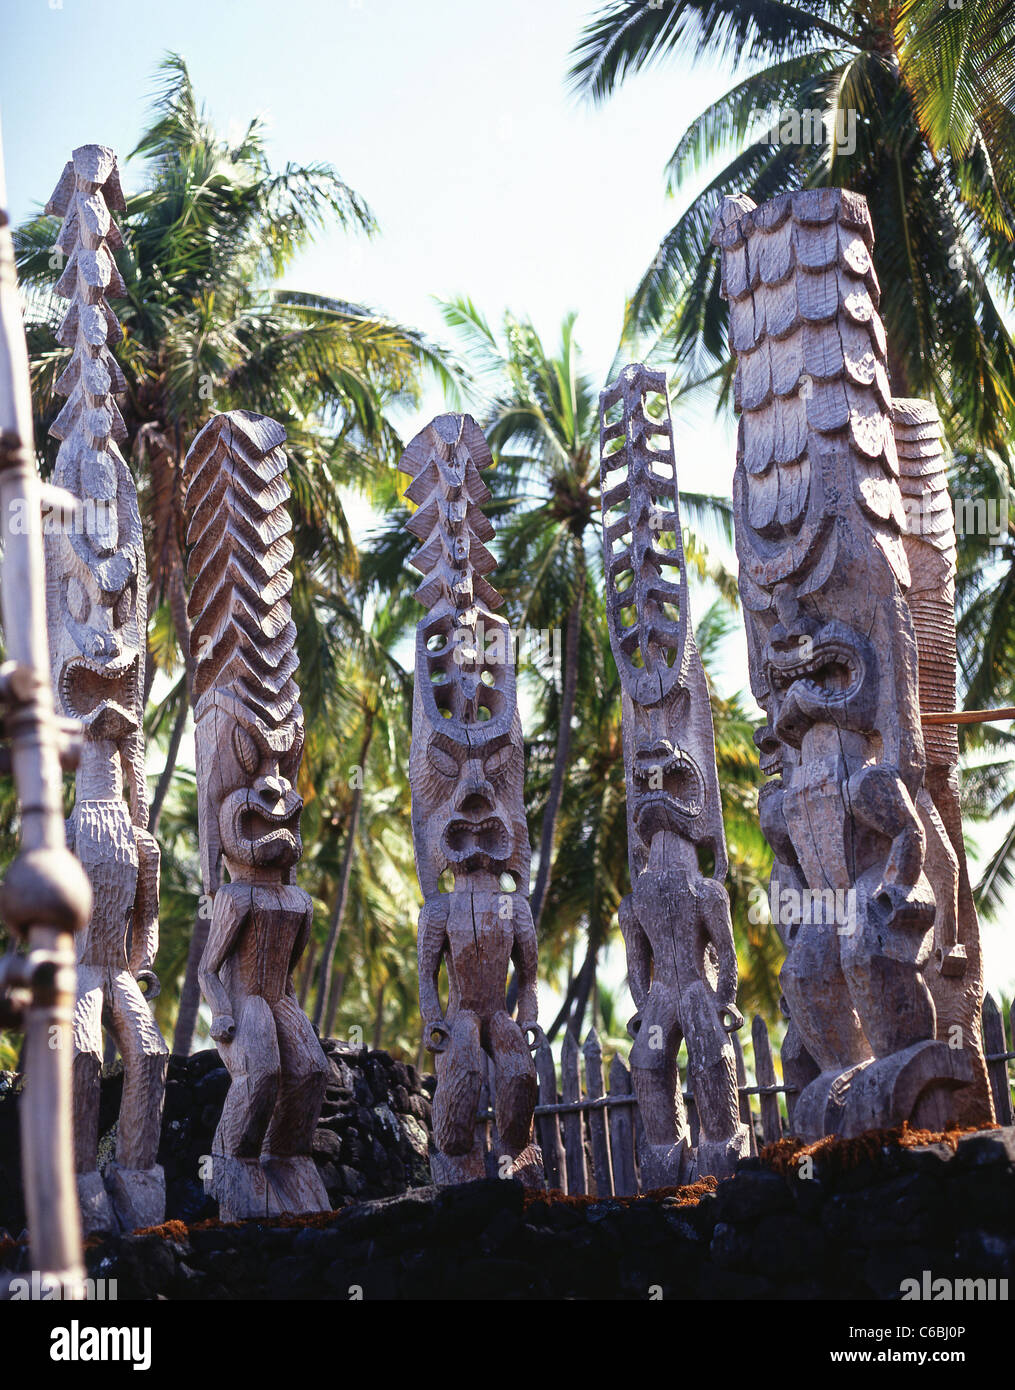 Idolo in legno statue, Puʻuhonua o Hōnaunau National Historical Park, Isola delle Hawaii, Hawaii, Stati Uniti d'America Foto Stock